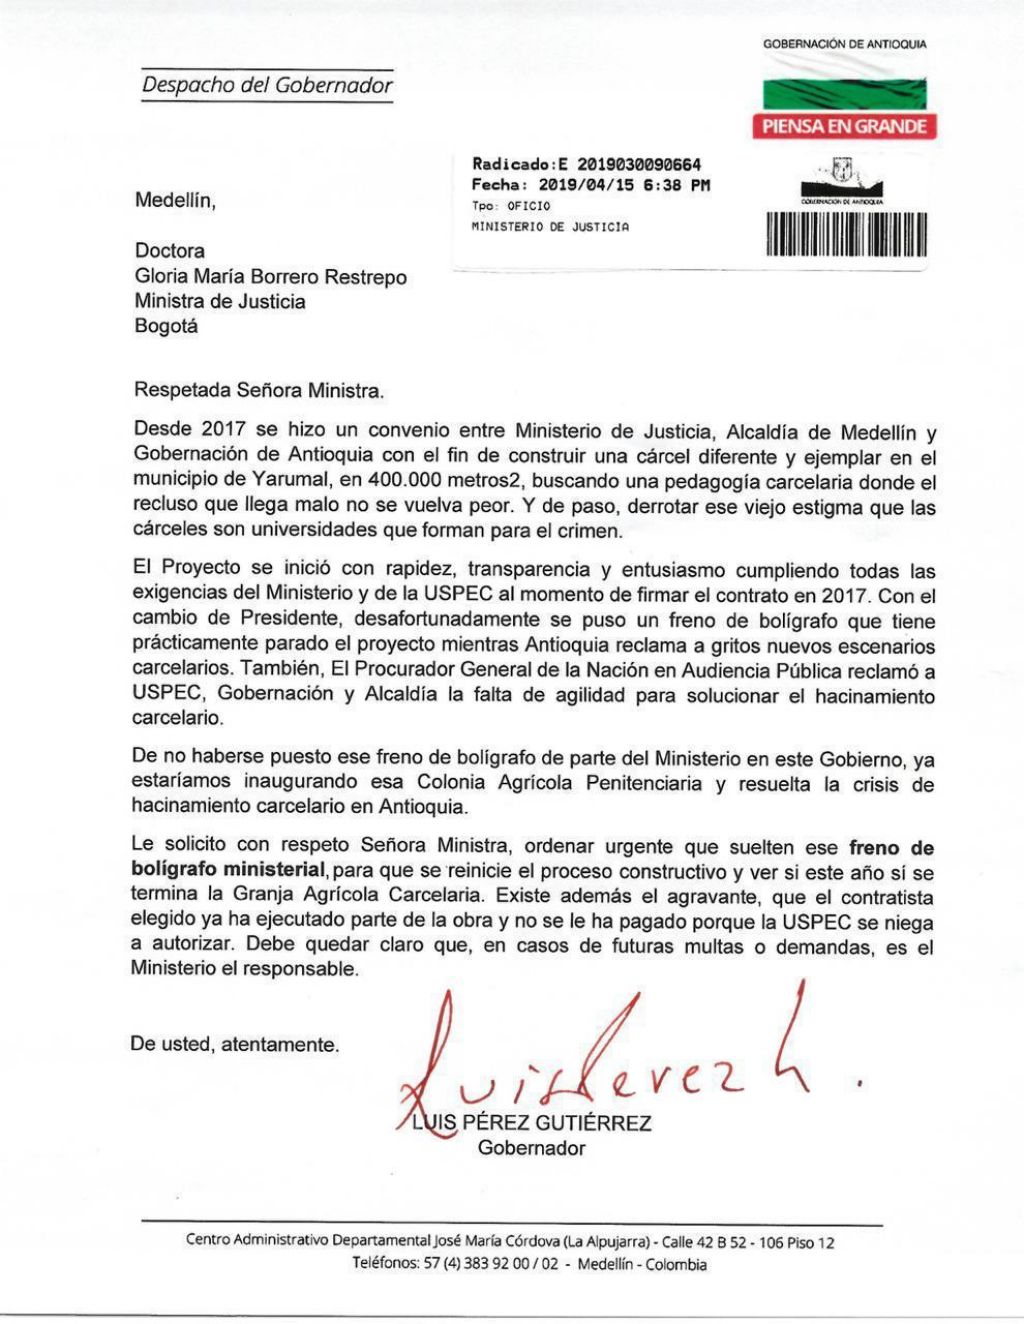 ATENCIÓN: enviamos texto de la carta del gobernador de Antioquia a la ministra de Justicia